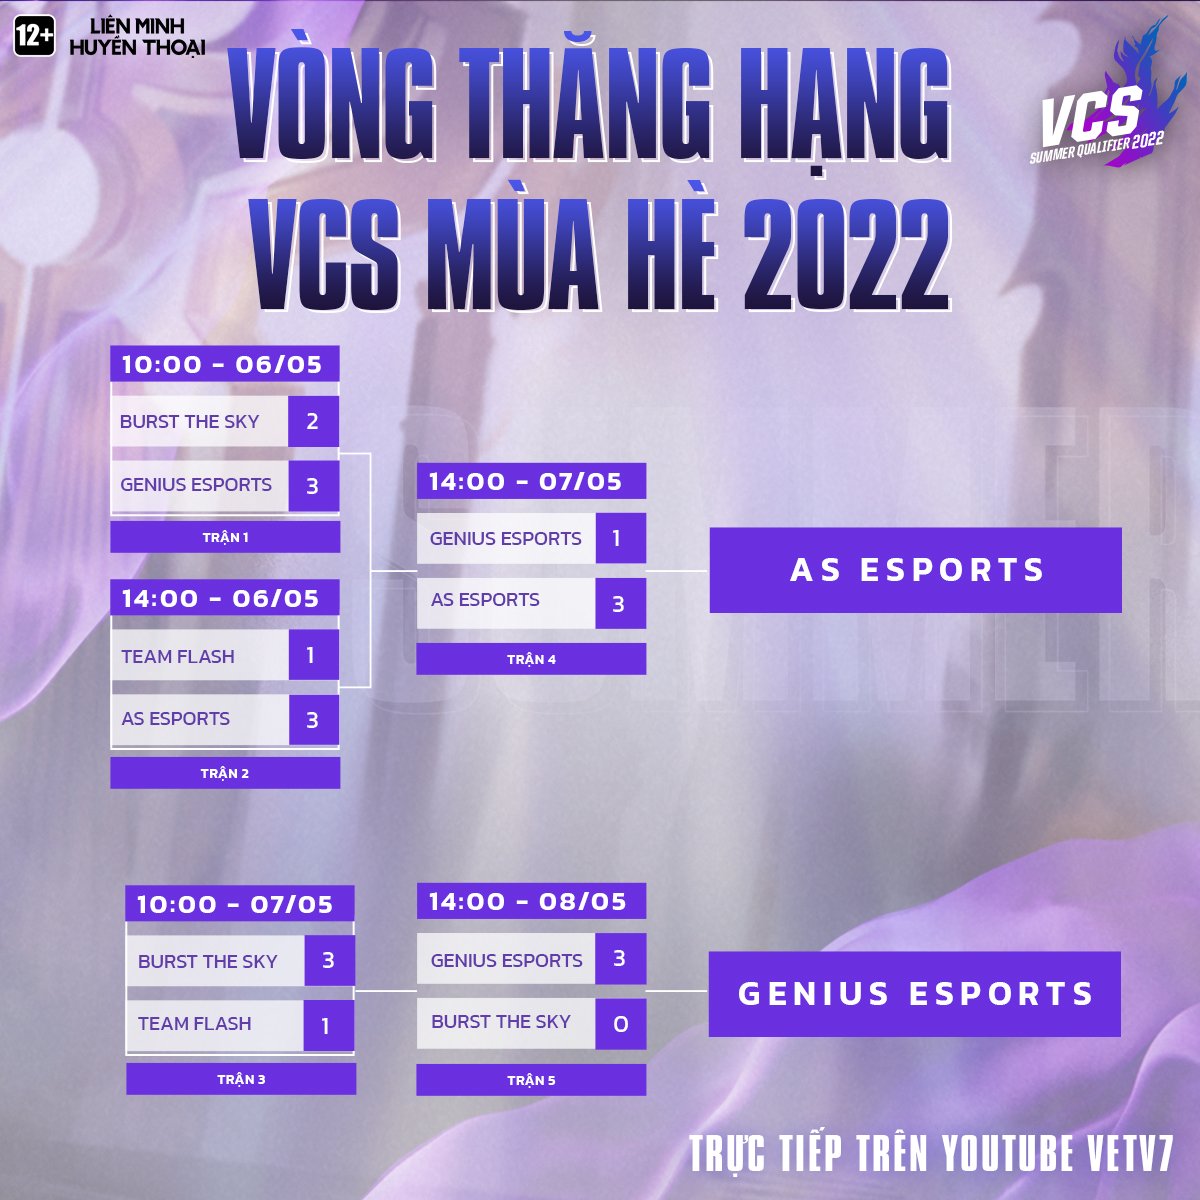 AS Esports và Genius Esports là 2 tân binh tại VCS Mùa Hè 2022